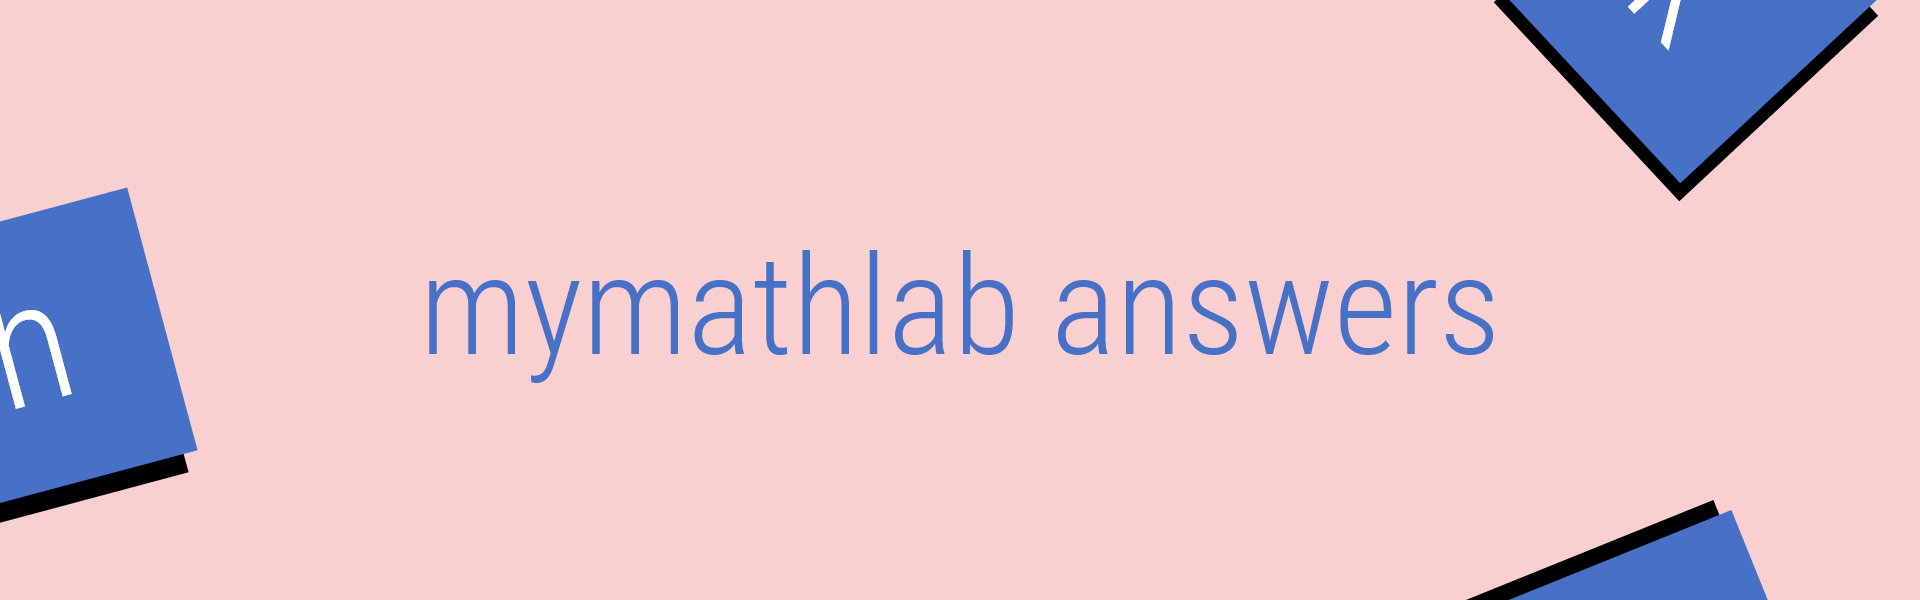 mymathlab answers